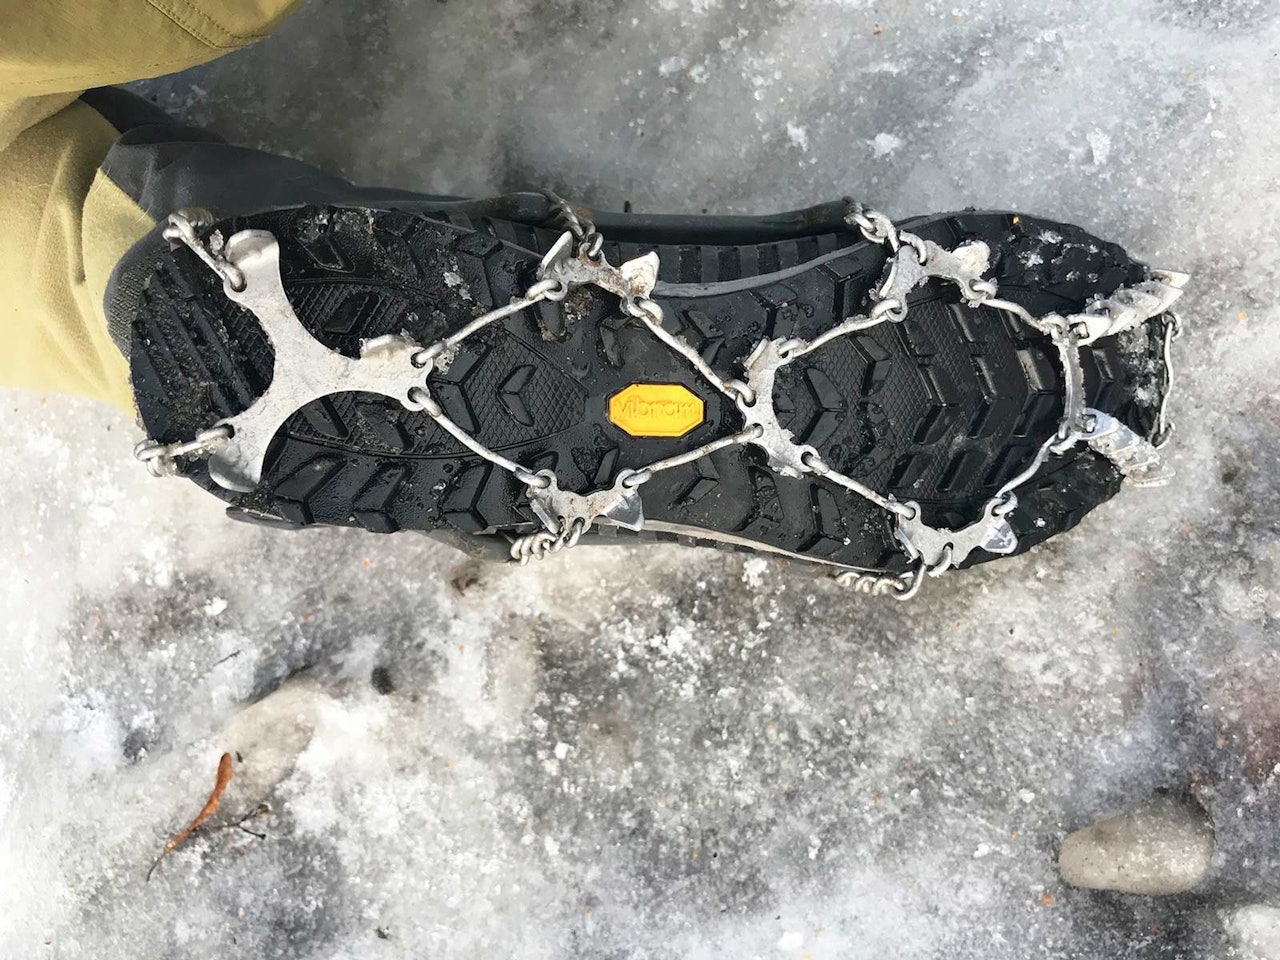 Snowline Chainsen Pro brodder på isen